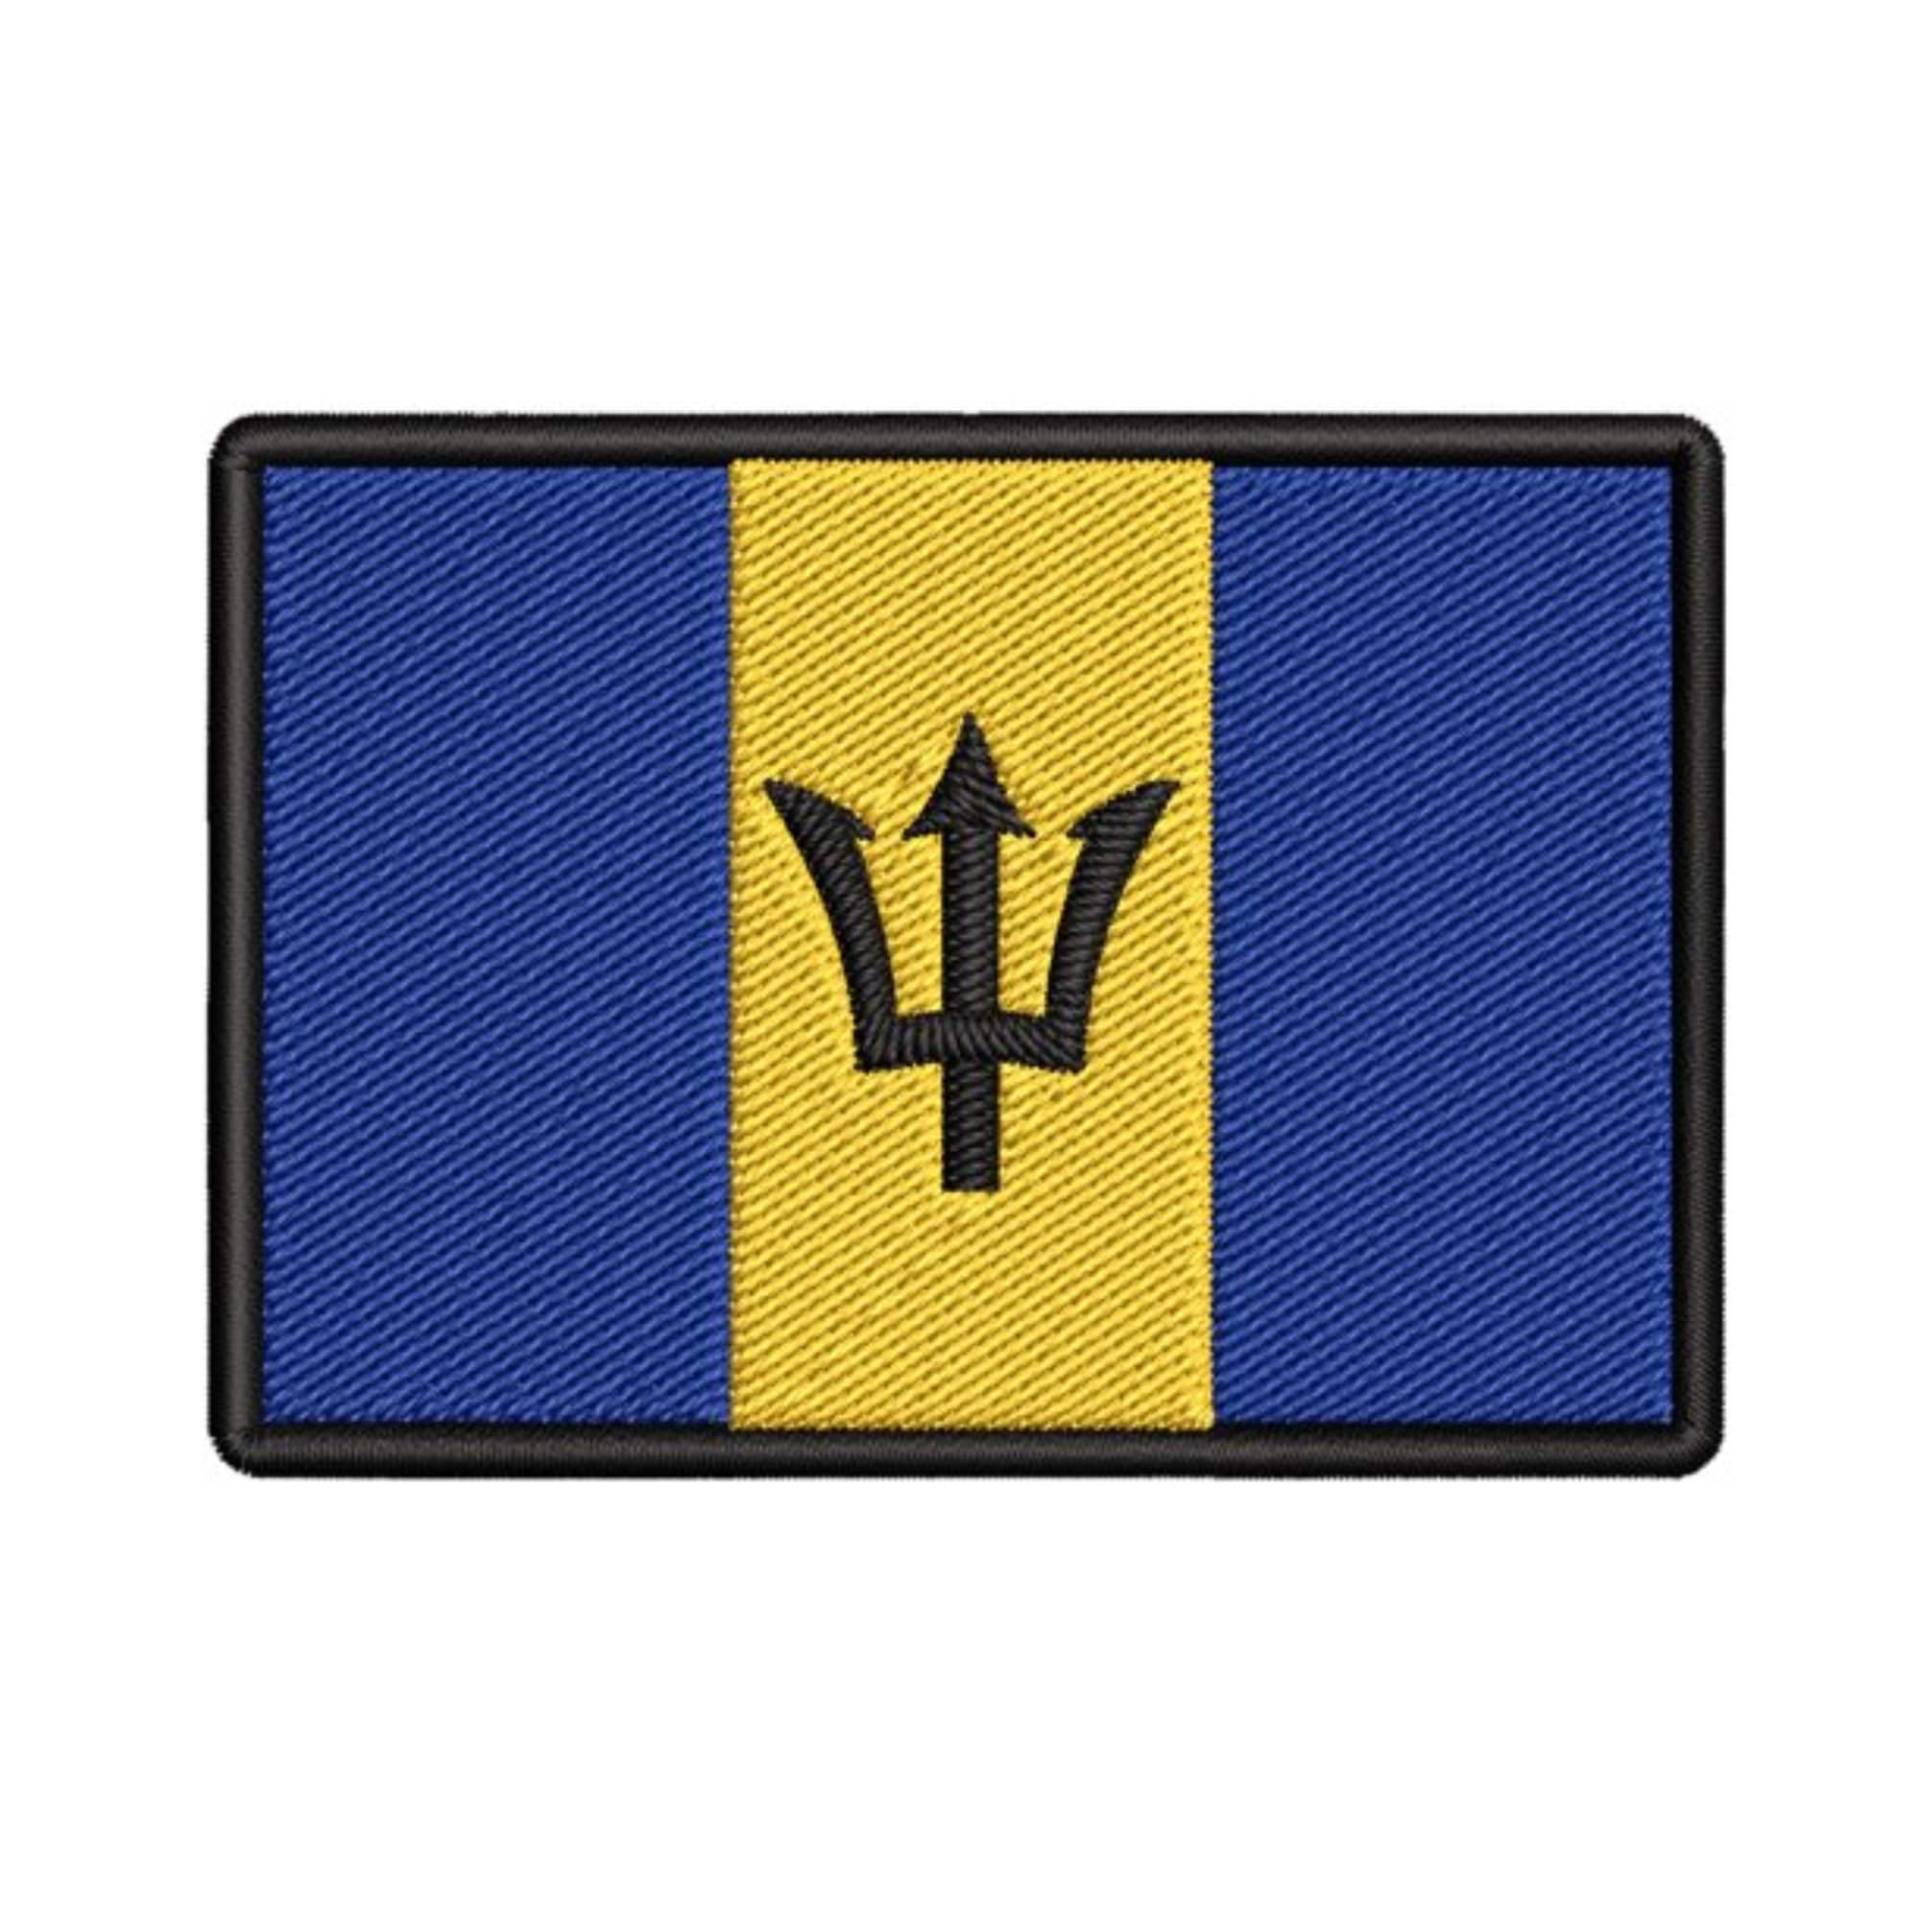 Barbados Flagge Patch Bestickt Bügelbild Applikation, Schulter Uniform Weste Jacke, Reisen, Biker Mc Club Military Veteran Forscher von FamilyAdventuresUS